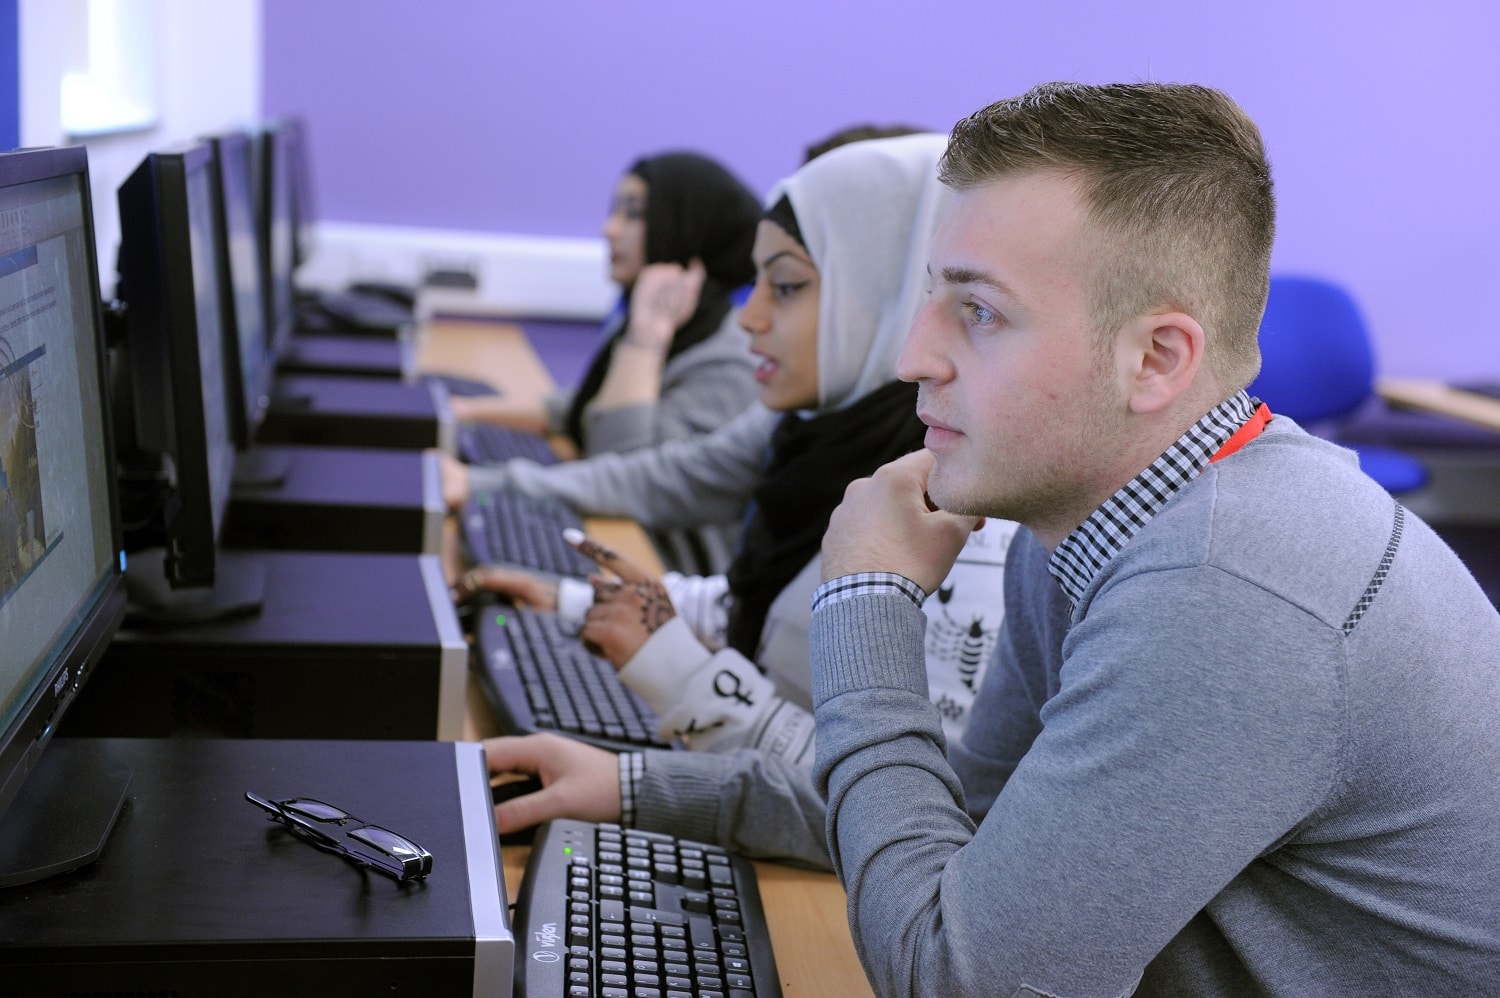 Students looking at computers at stratford-upon